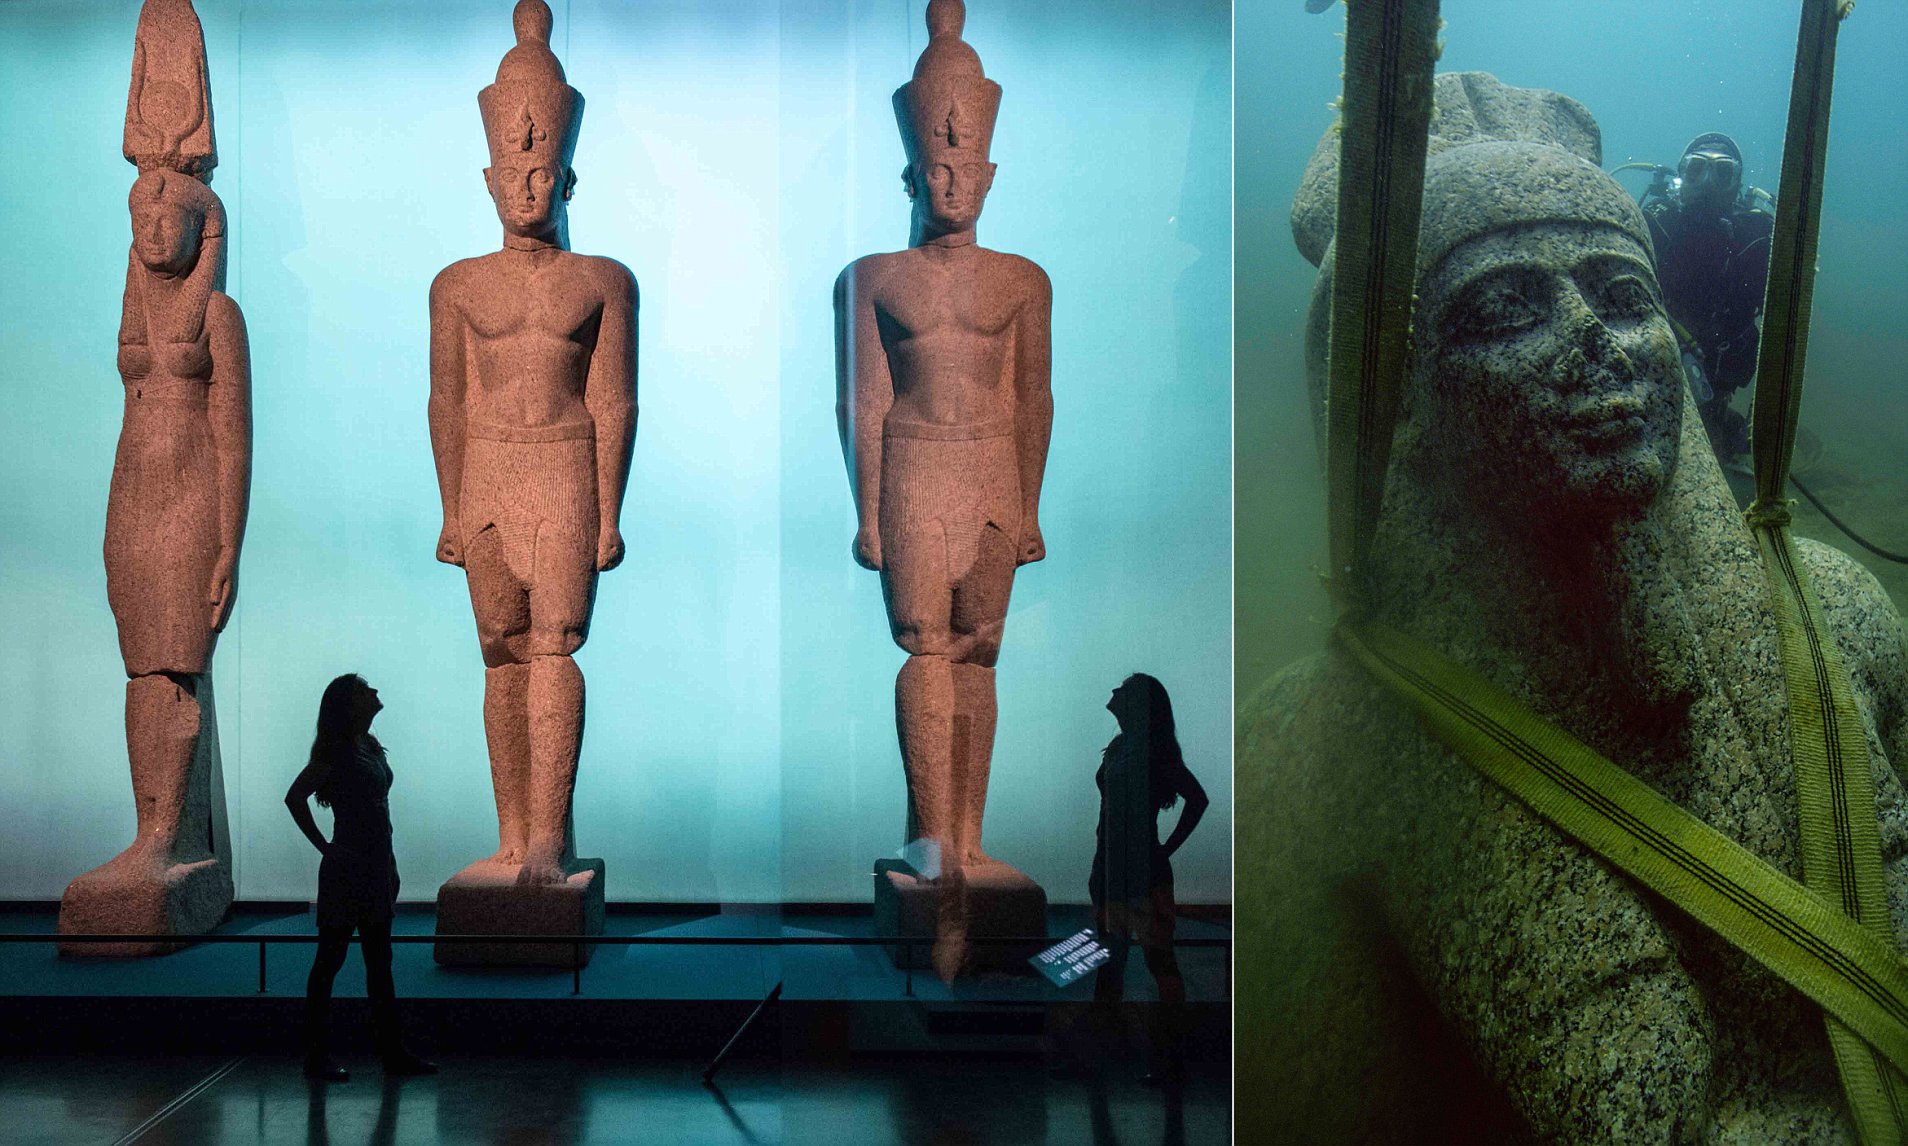 Експонати виставки "Таємниці затонулого Єгипту" повертаються додому після тривалого туру